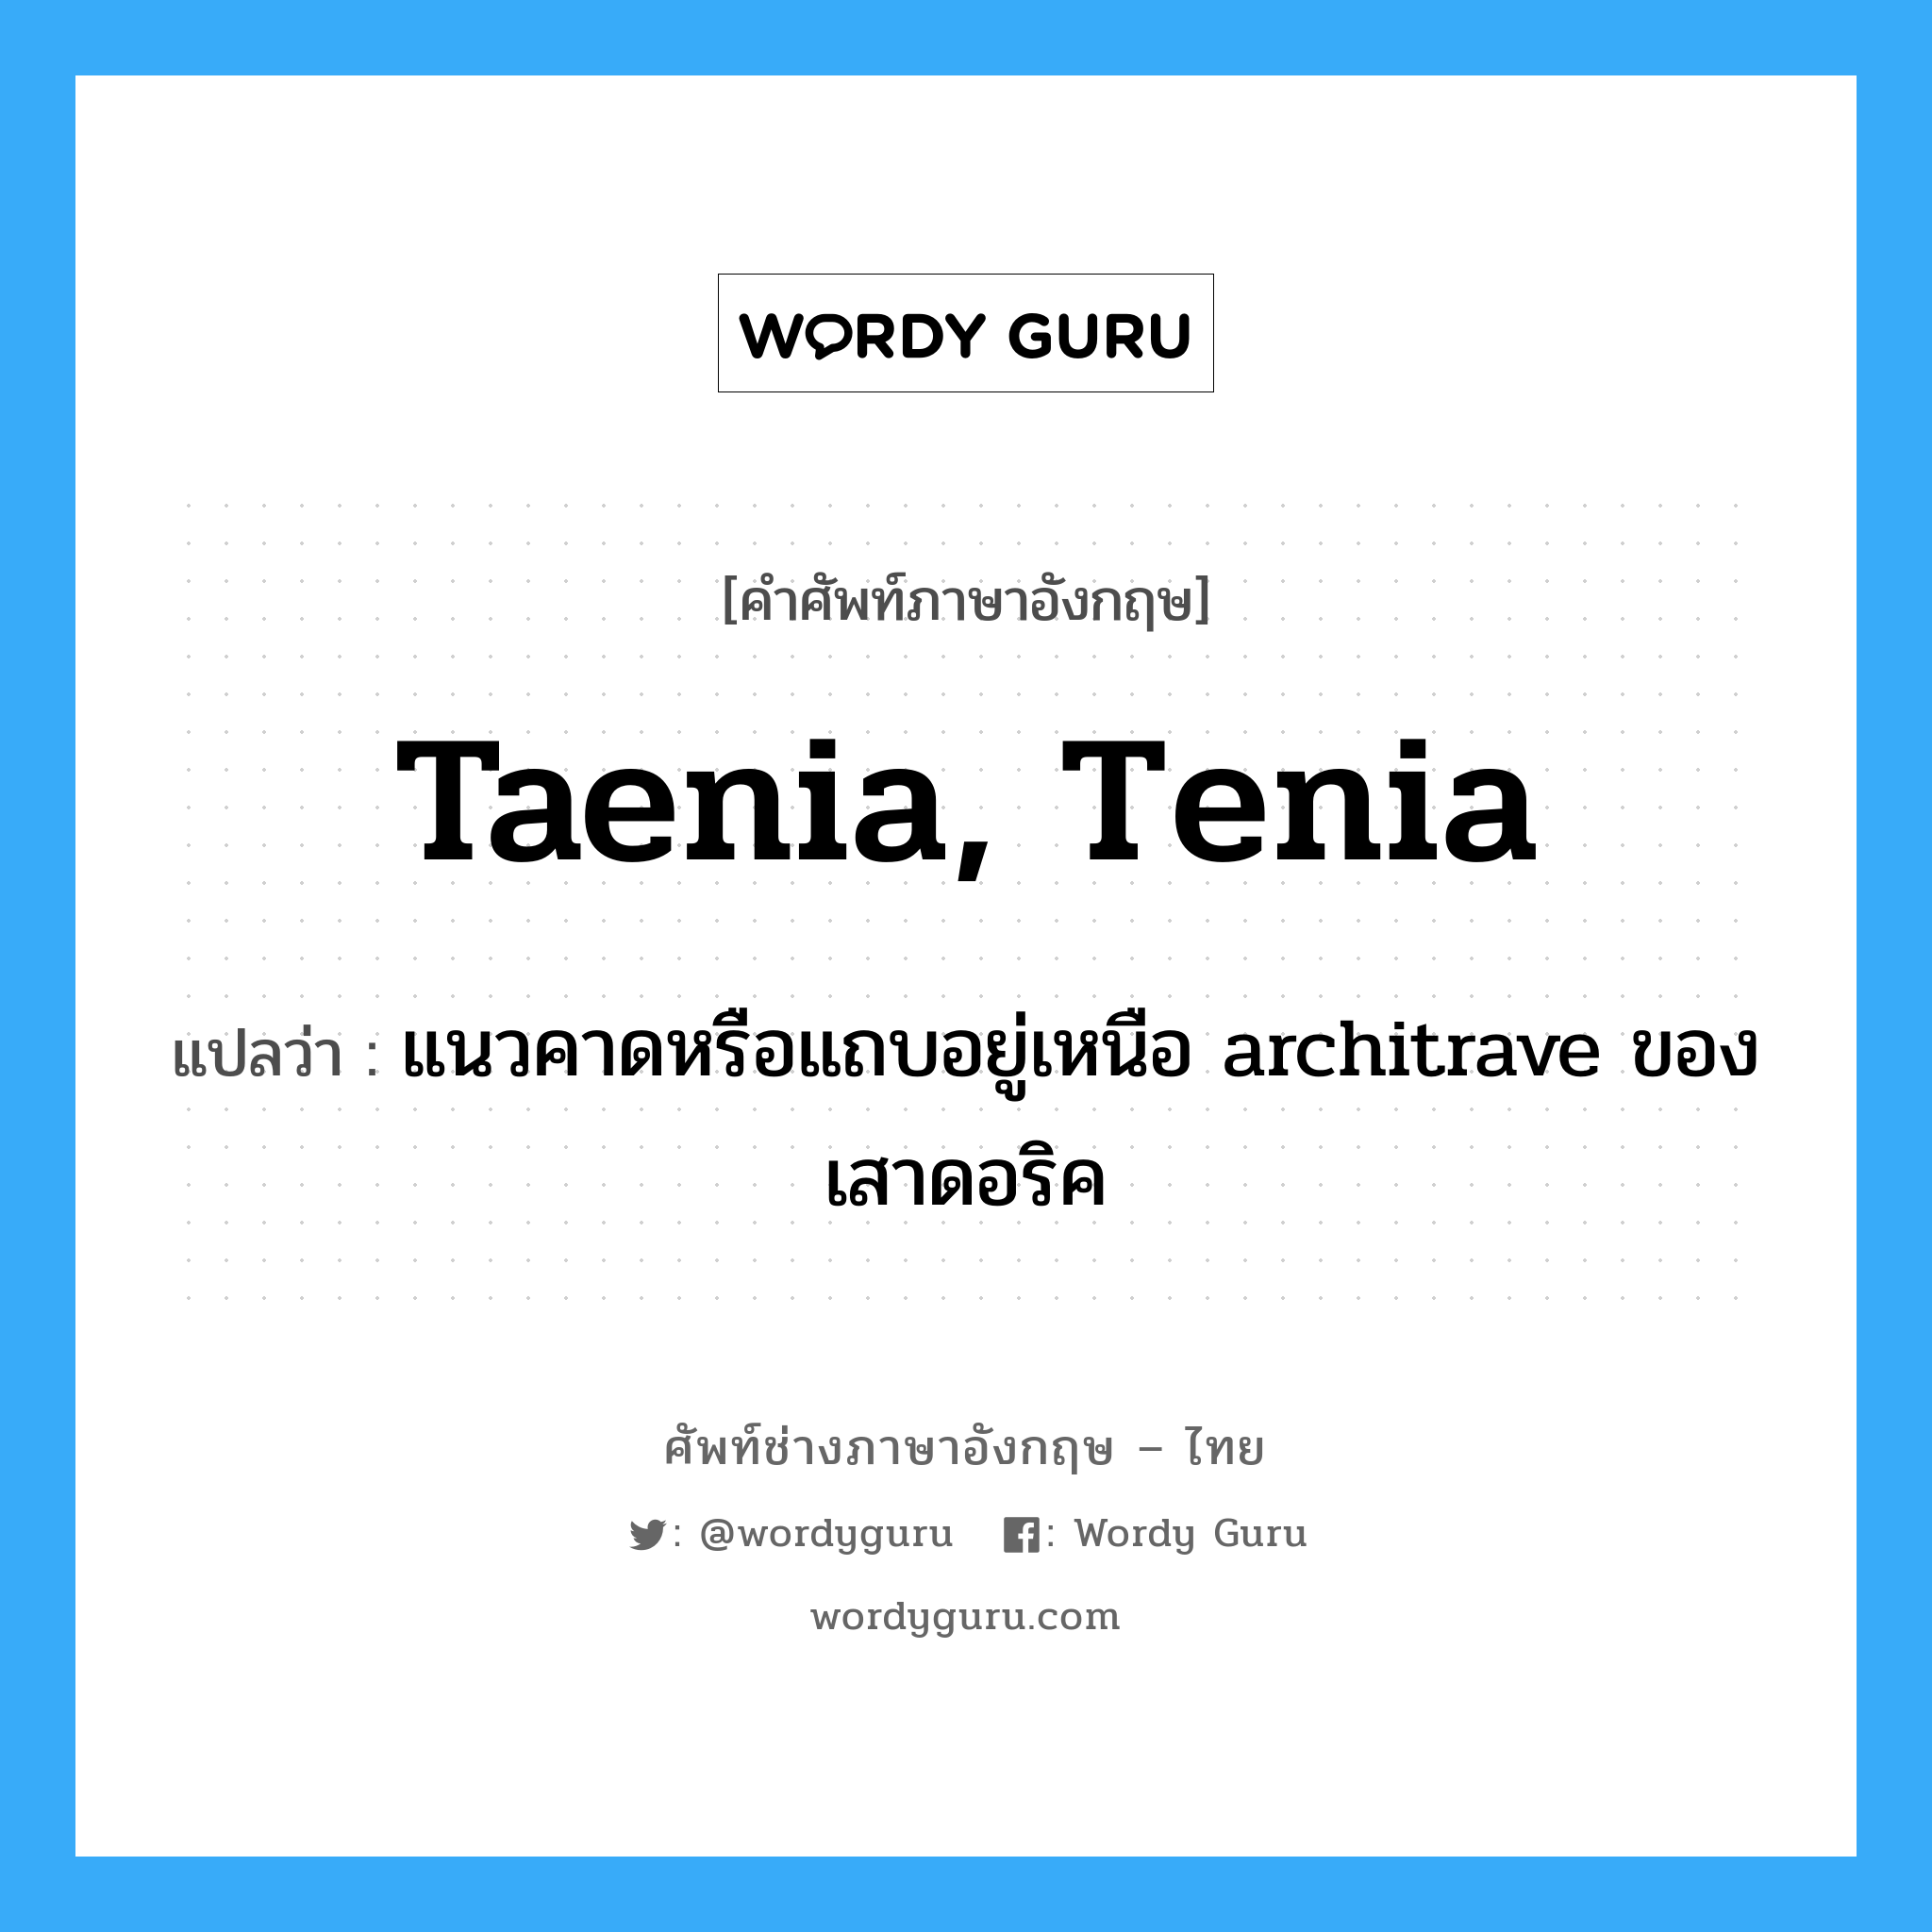 taenia, tenia แปลว่า?, คำศัพท์ช่างภาษาอังกฤษ - ไทย taenia, tenia คำศัพท์ภาษาอังกฤษ taenia, tenia แปลว่า แนวคาดหรือแถบอยู่เหนือ architrave ของเสาดอริค